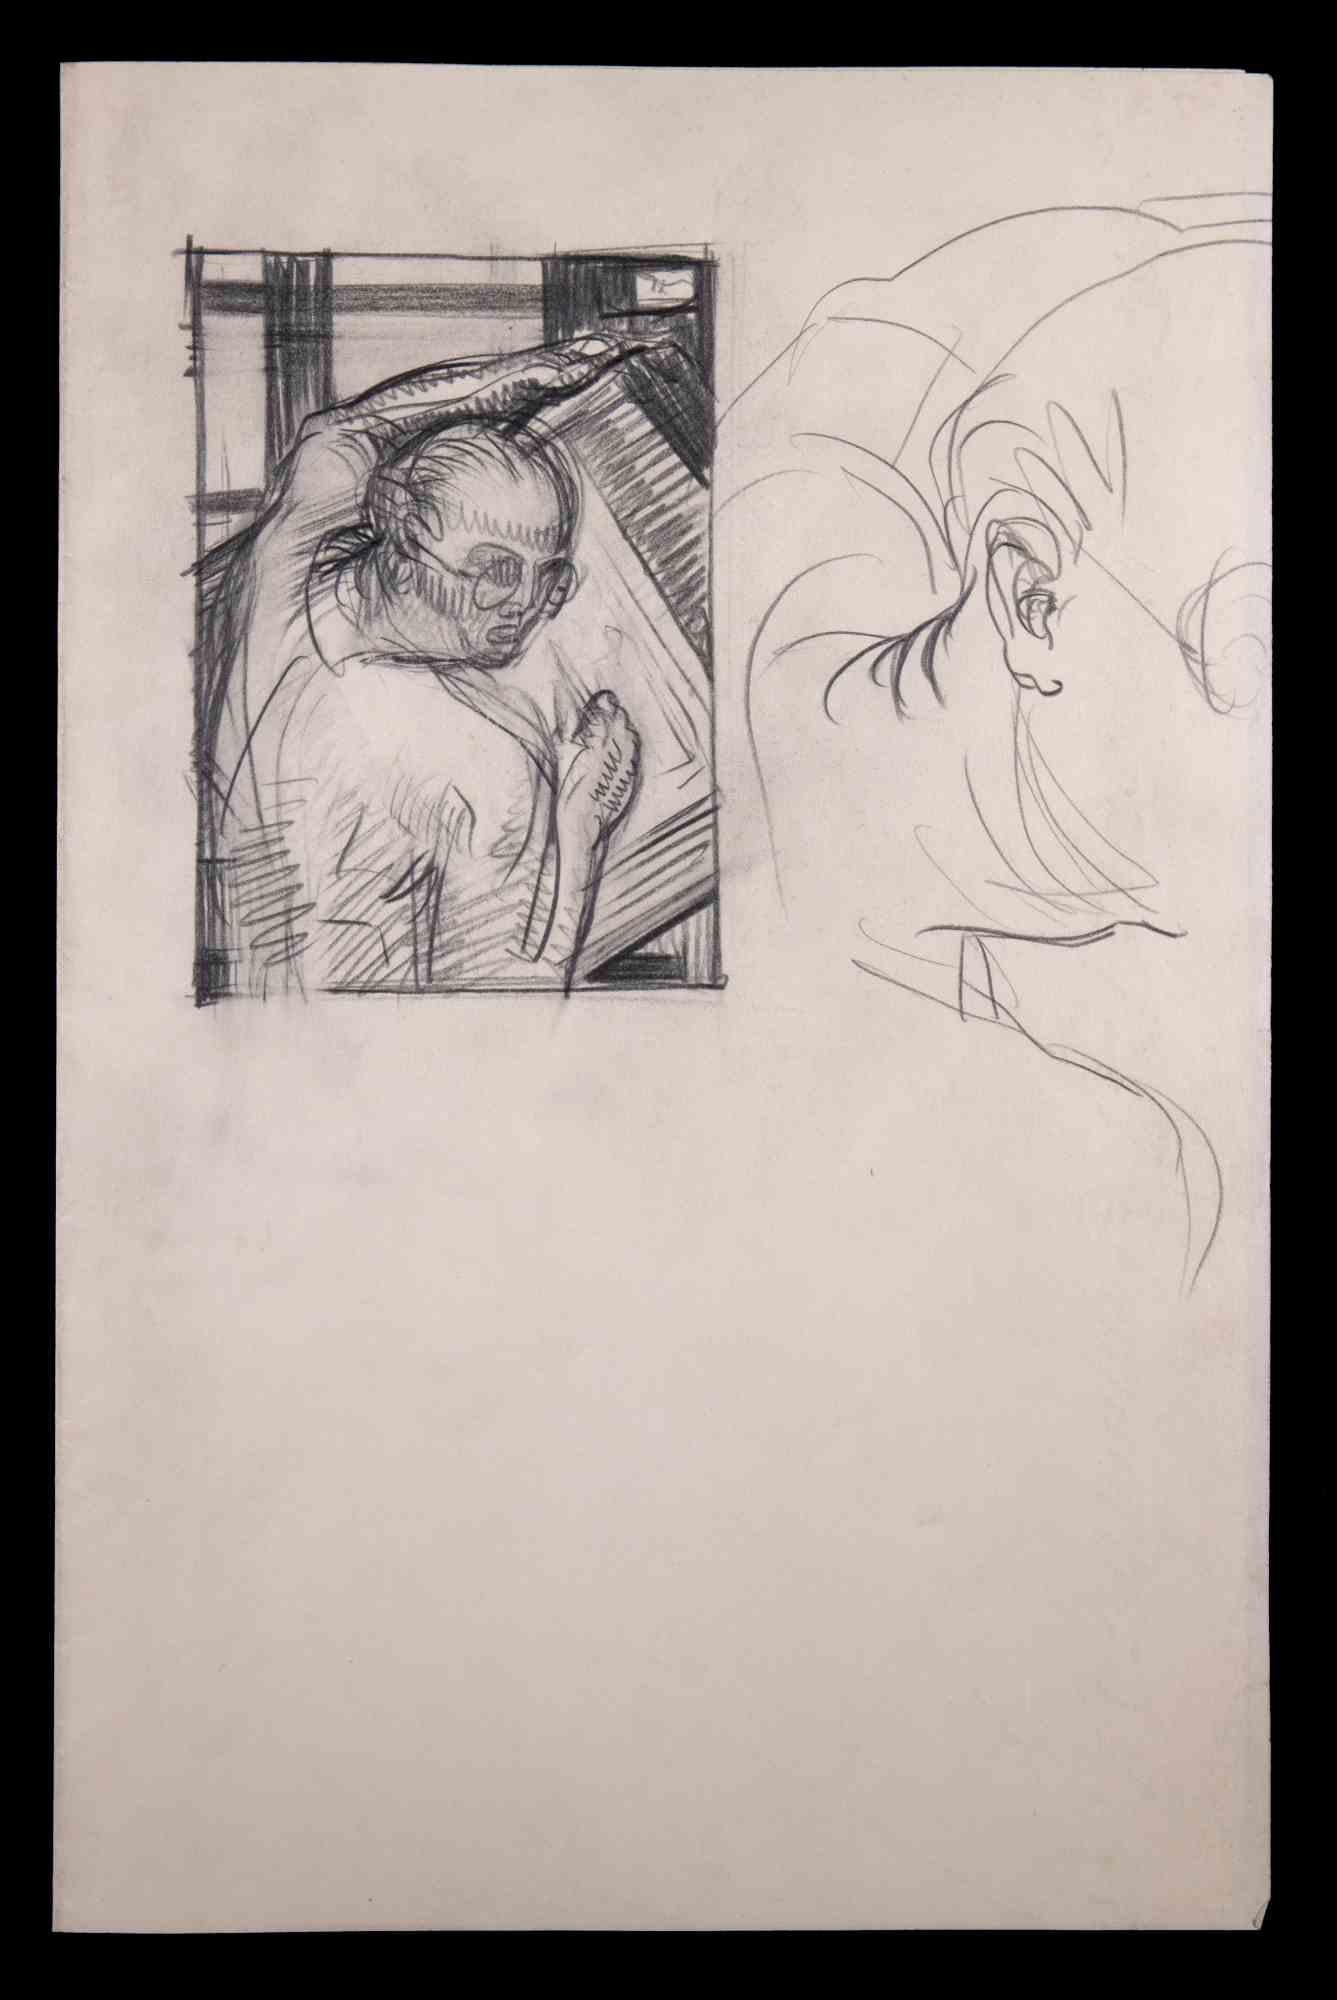 Sketches d'un artiste - dessin original d'un artiste par Inconnu - milieu du XXe siècle